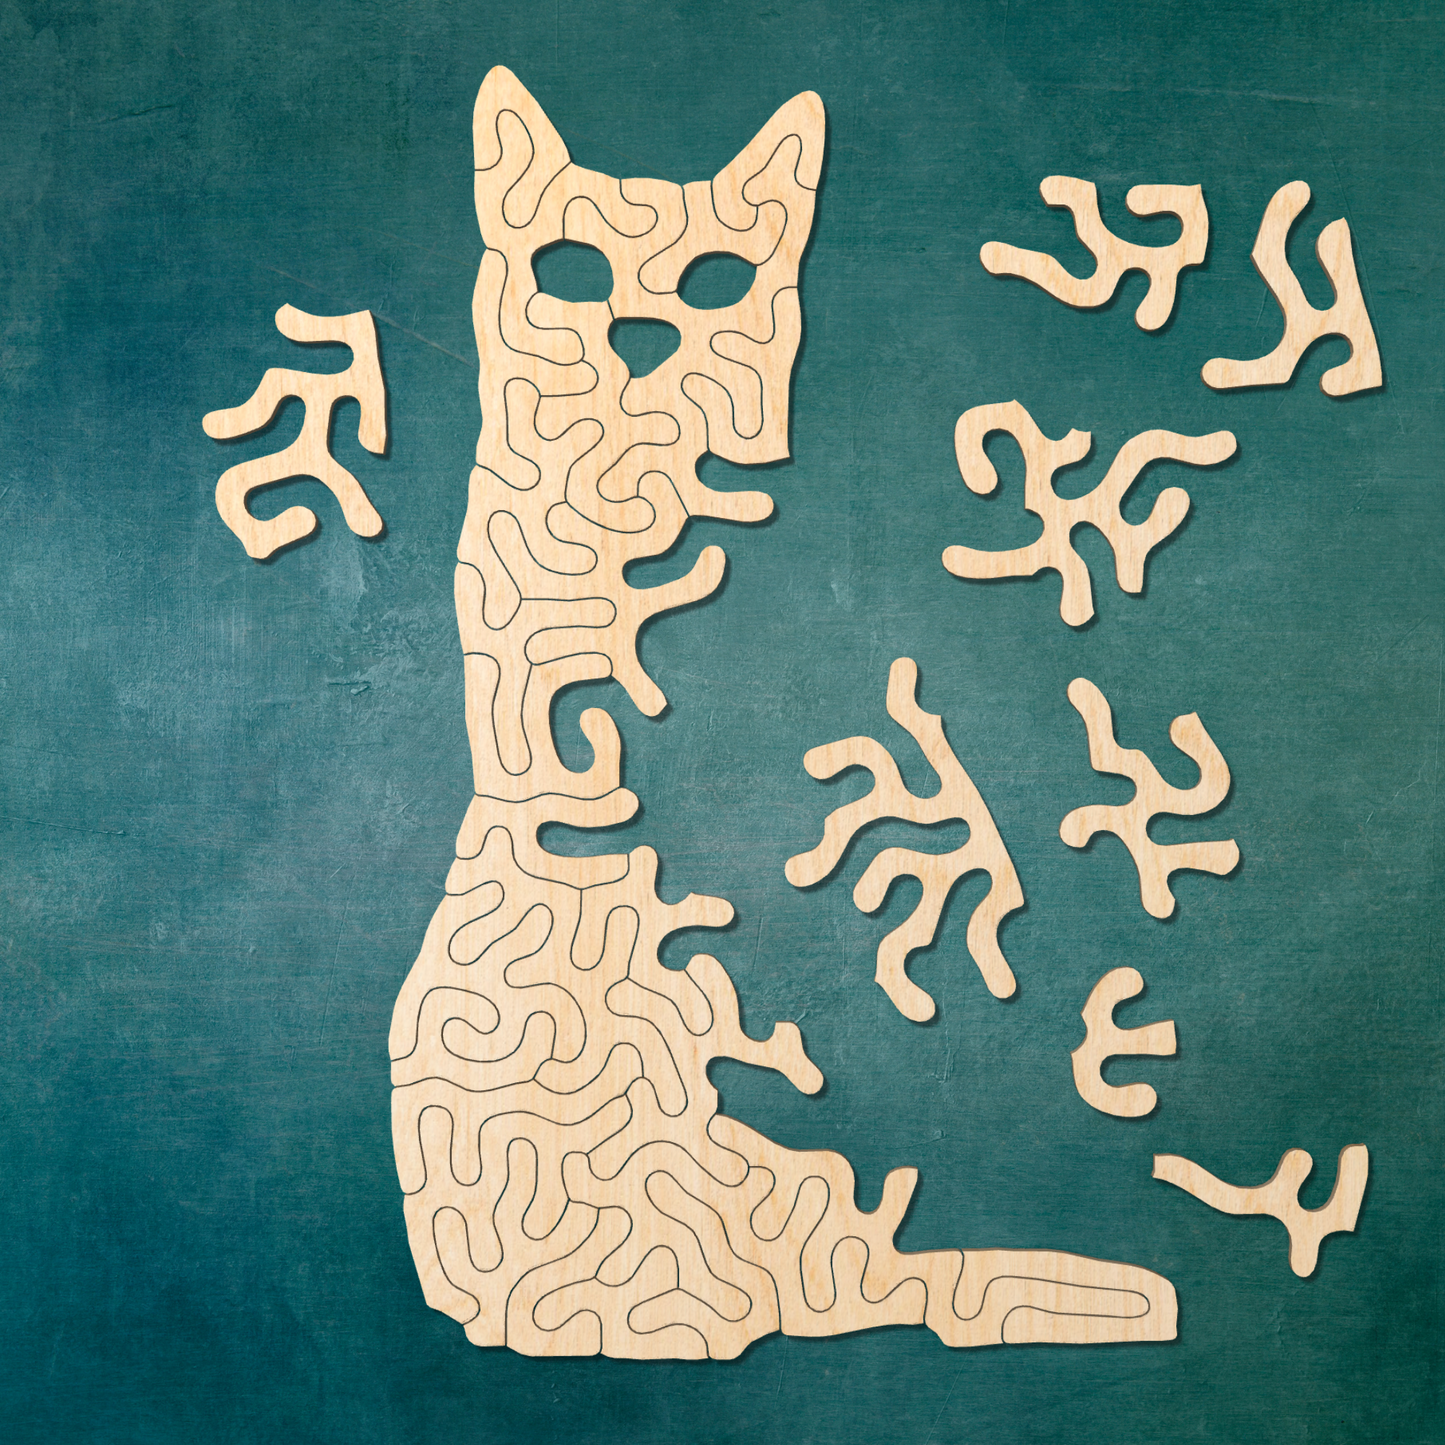 cat | Wooden Children's Puzzle | Entropy series | 35 pieces